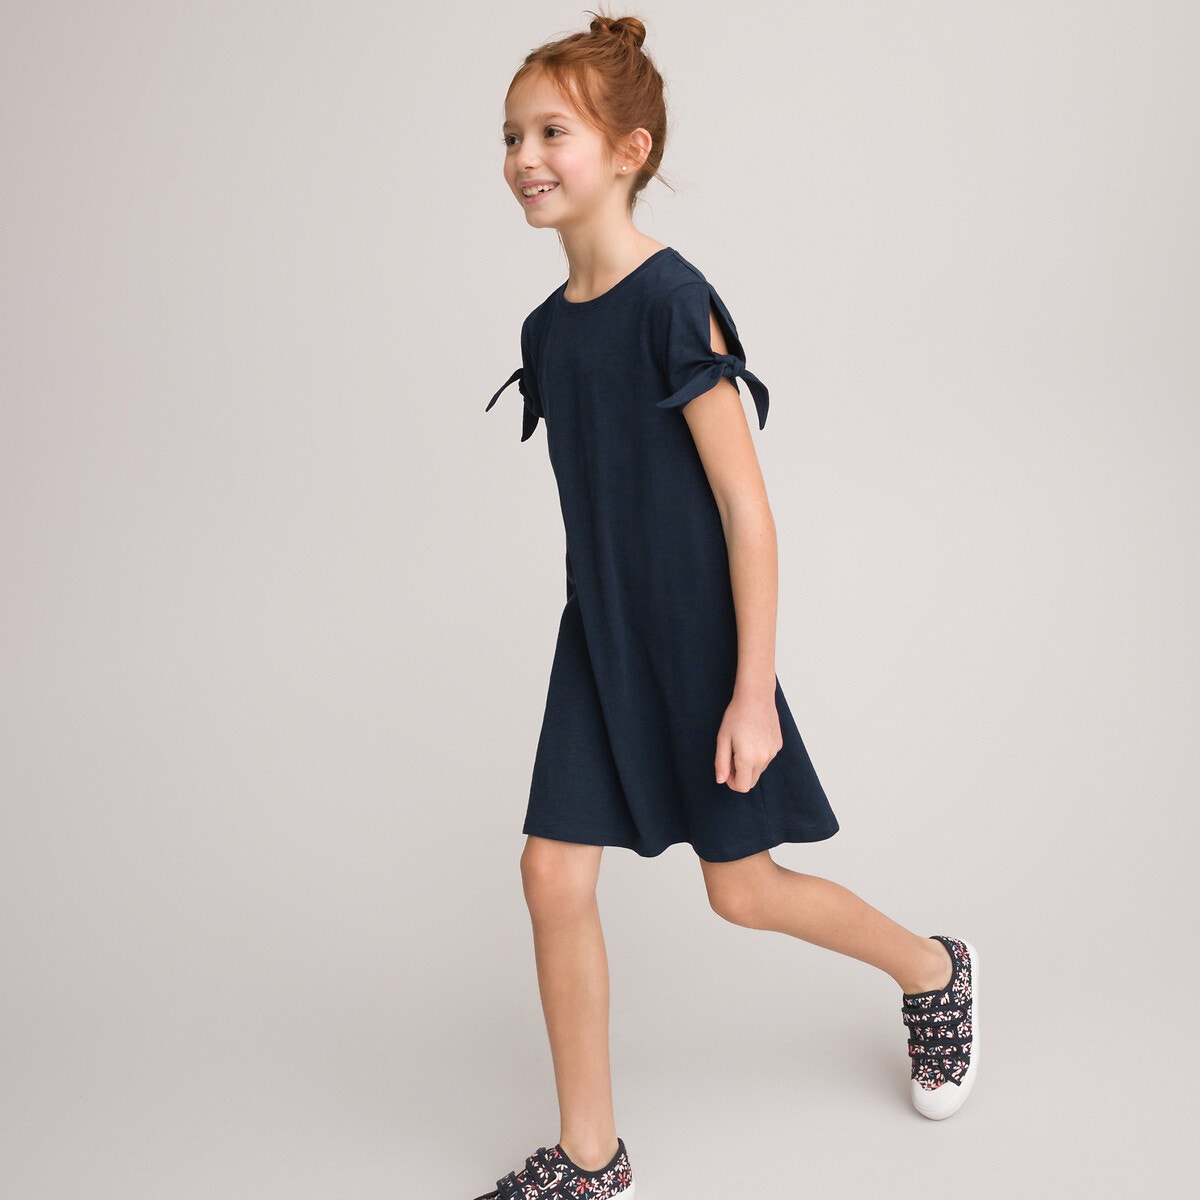 ΠΑΙΔΙ | Φορέματα | Κοντά μανίκια Σετ 2 κοντομάνικα φορέματα, 3-12 ετών